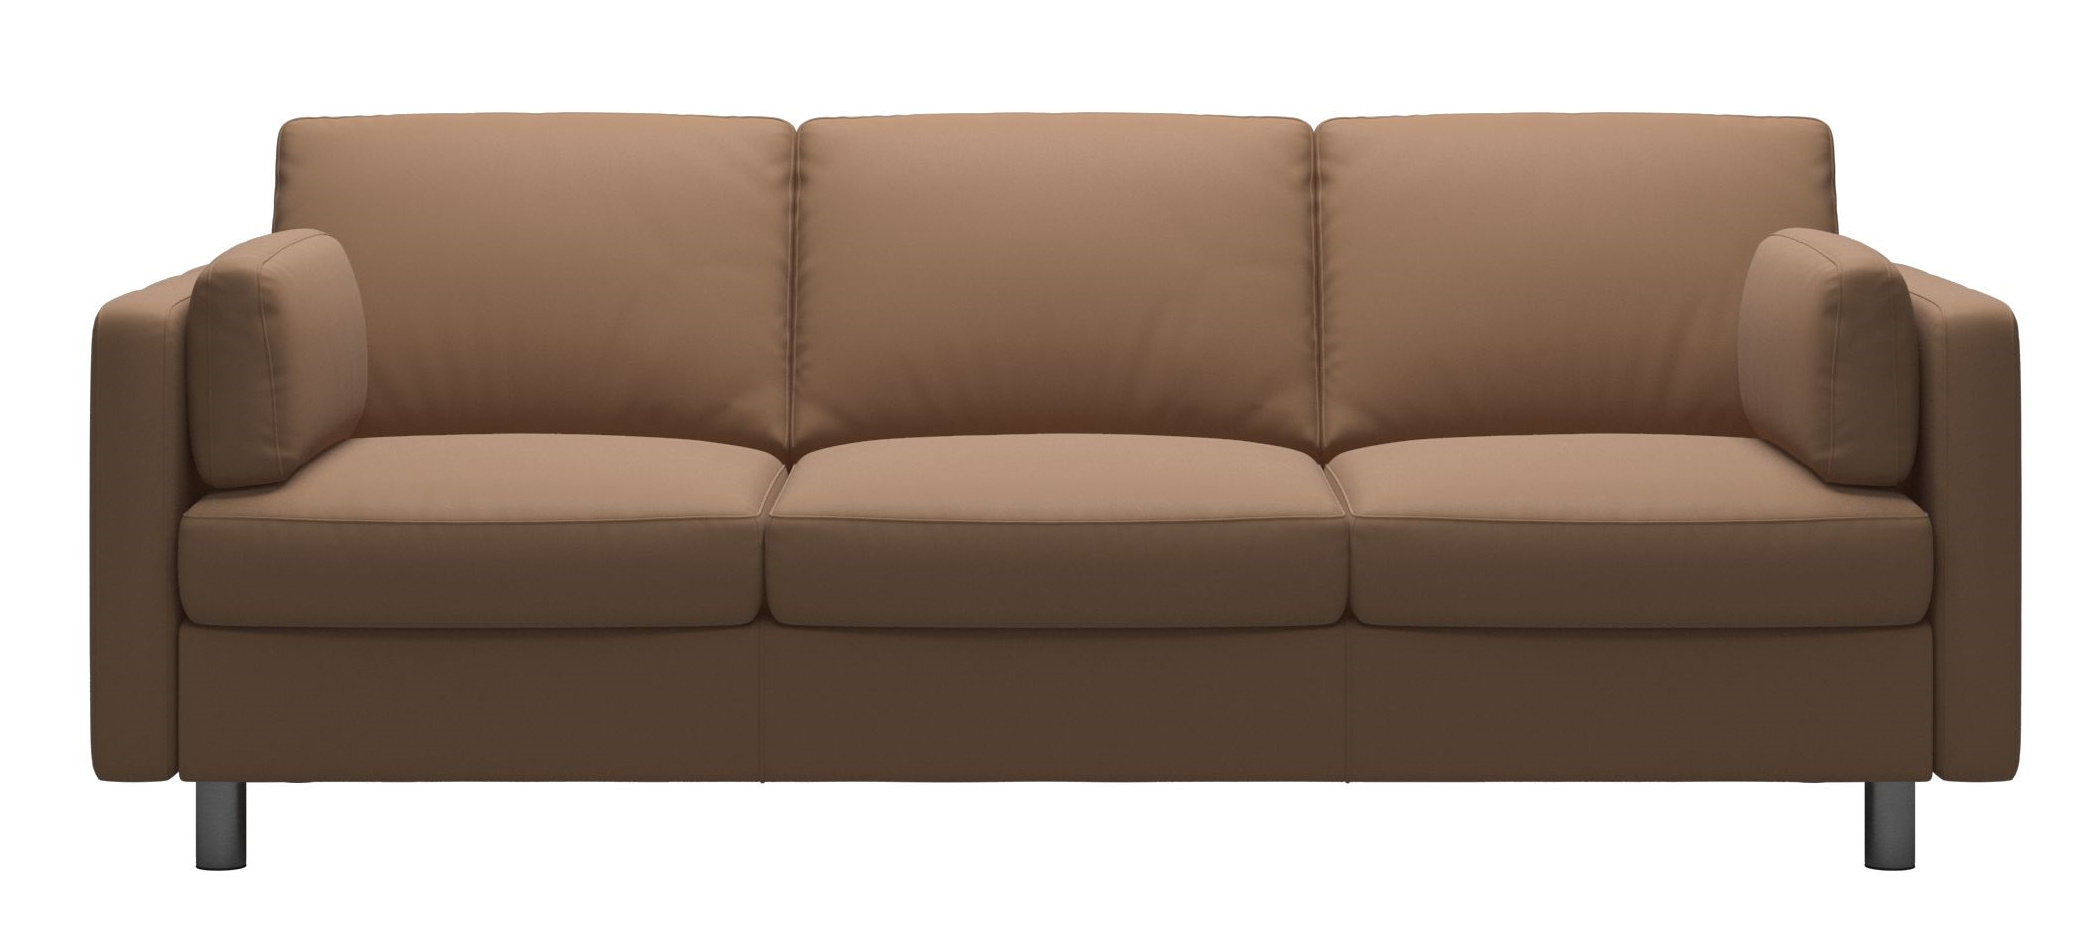 Canapea cu 3 locuri Stressless Emma E600 Classic picioare metalice 11cm piele Batik Latte sensodays.ro